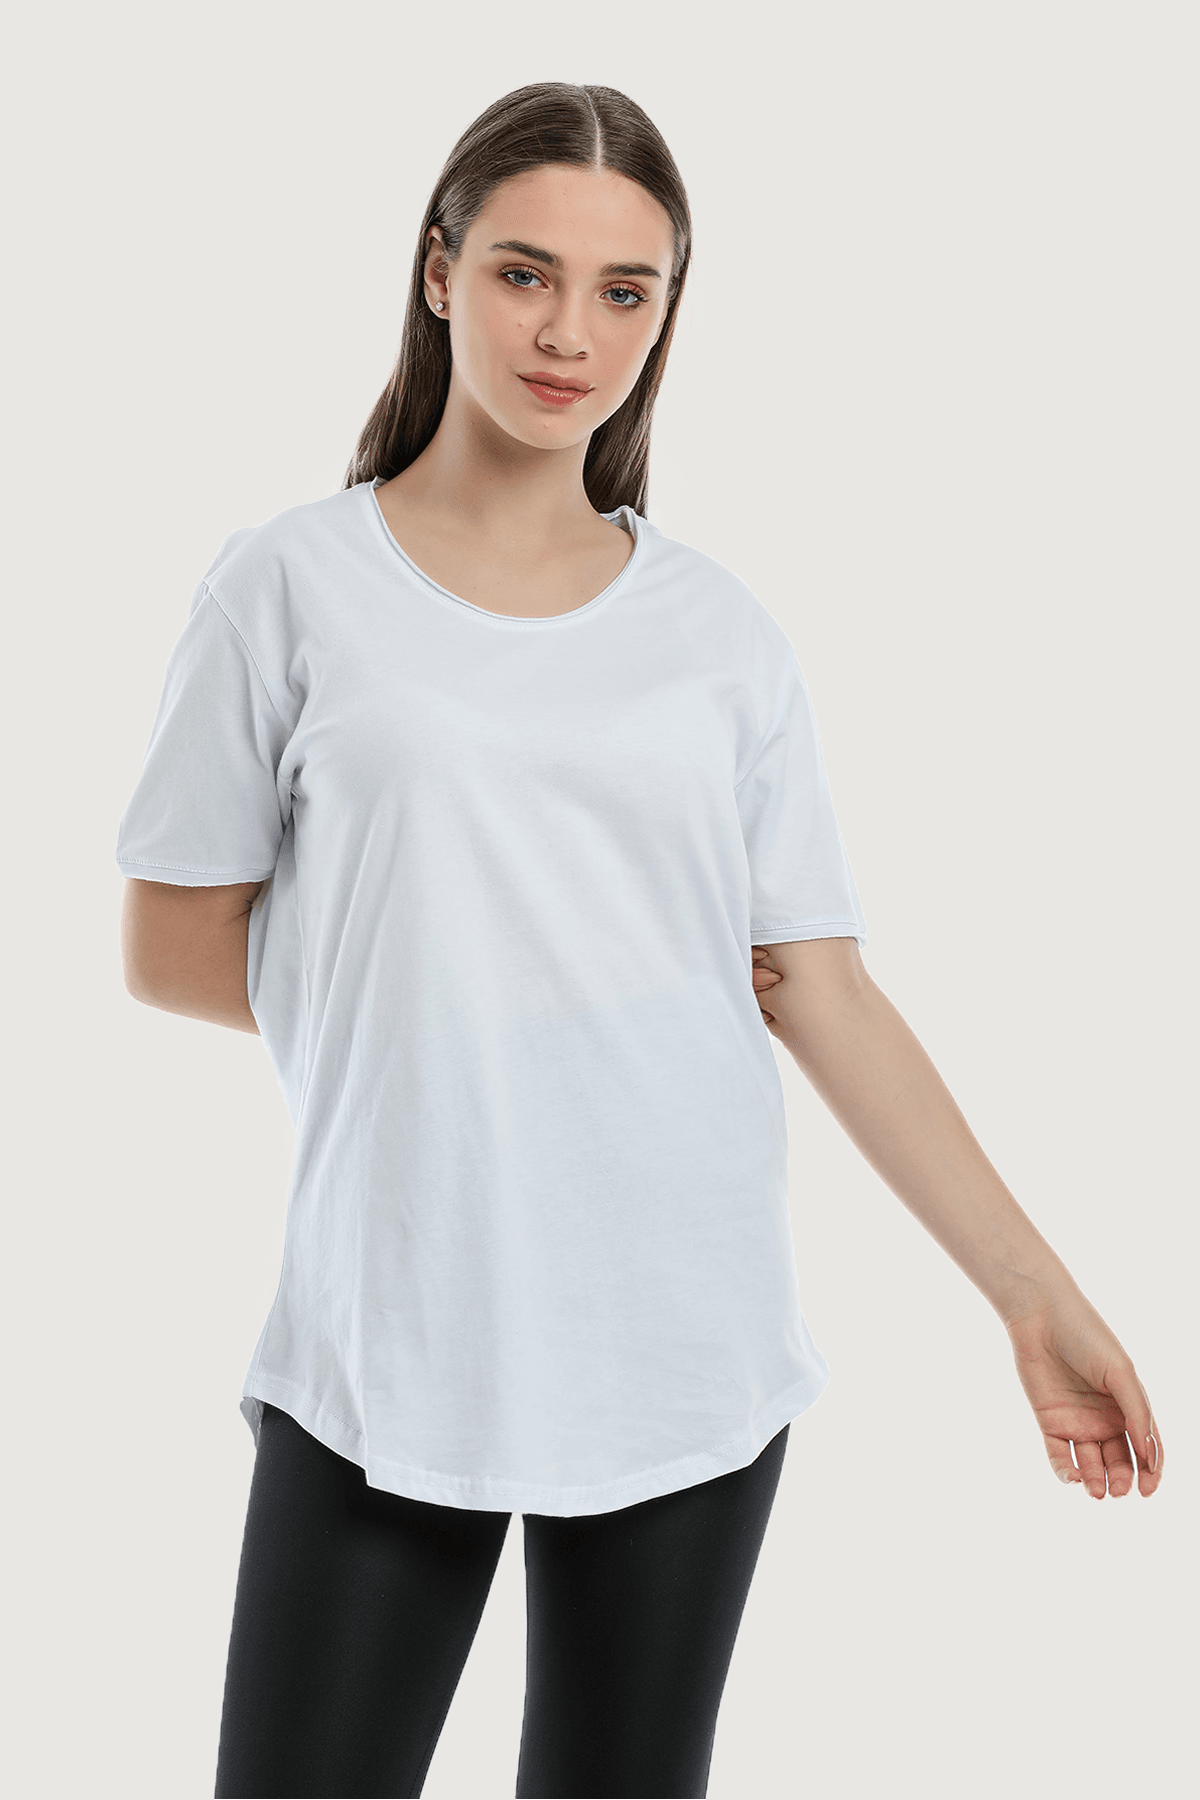 Locker lässig geschnittenes Basic-T-Shirt für Damen - Weiß